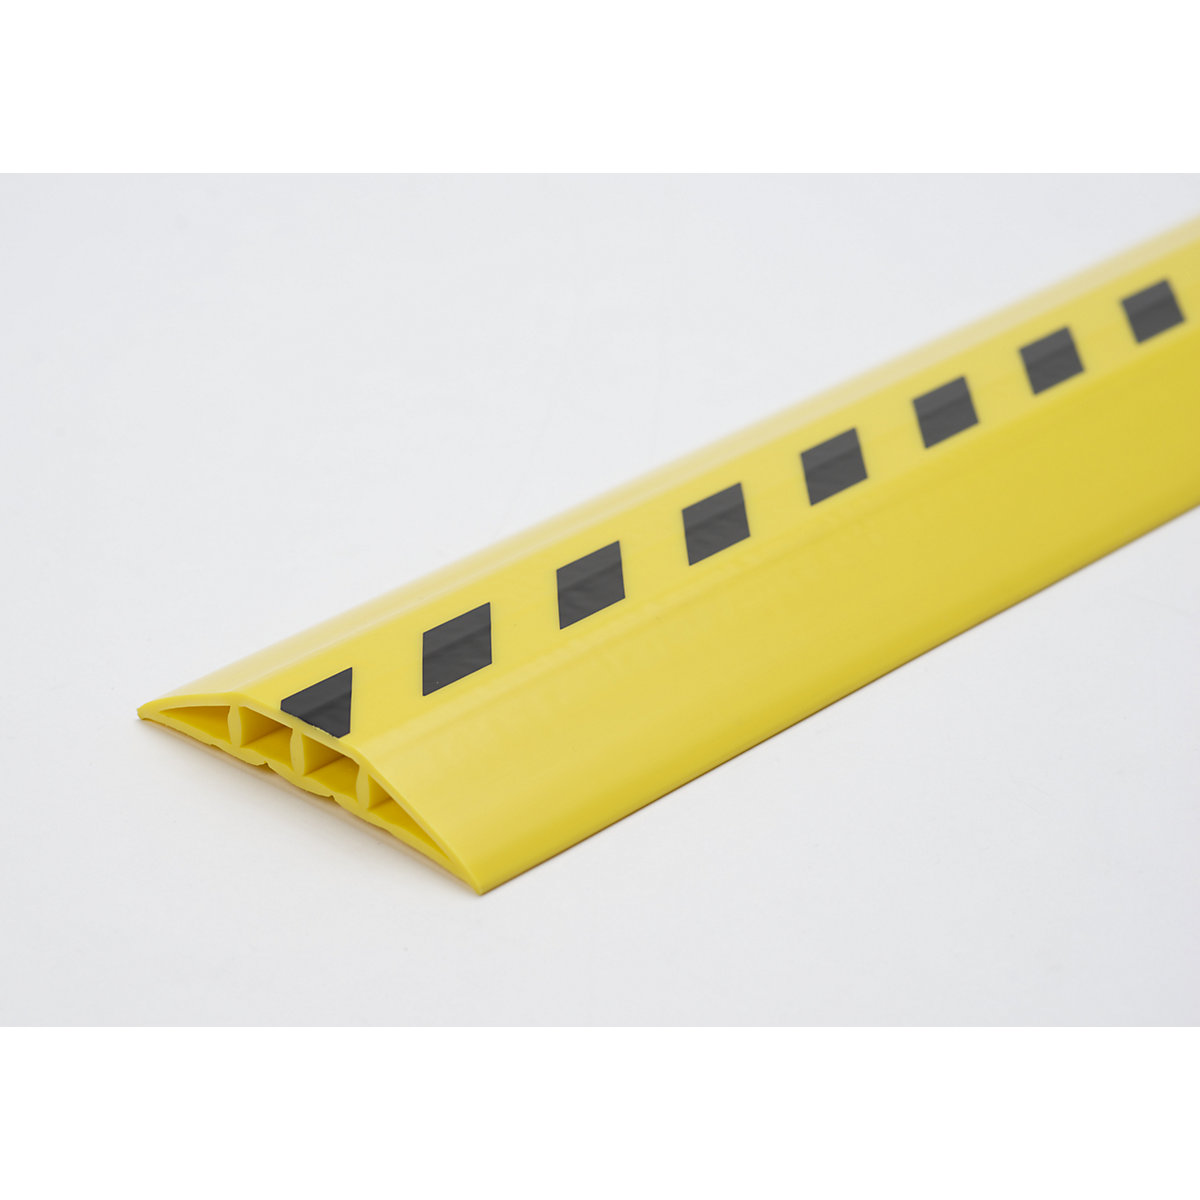 Canalina passacavo in plastica, per cavi e tubi flessibili con Ø fino a 10 mm, nero-giallo, 2 camere, lunghezza 1,5 m-5